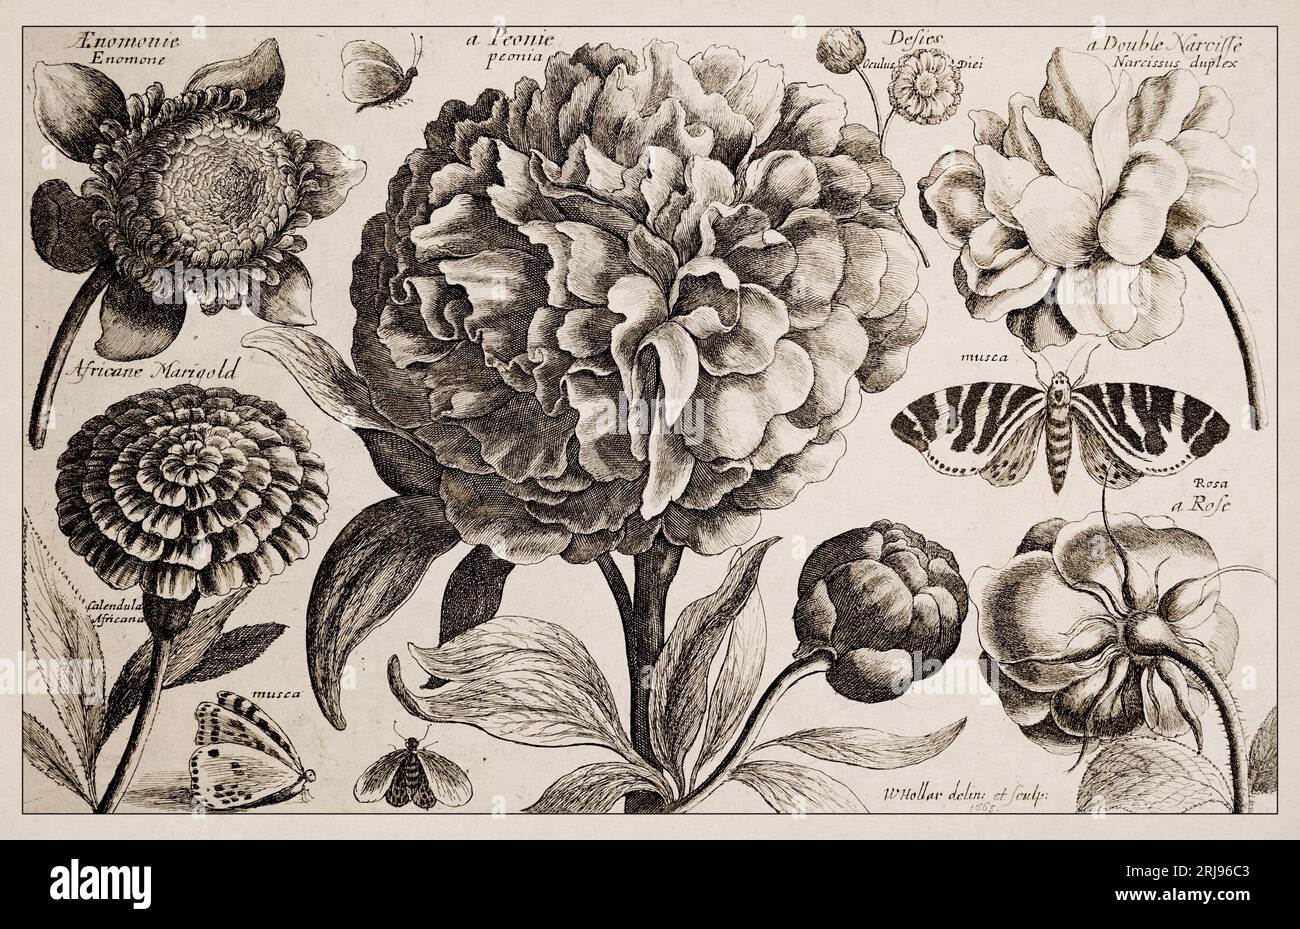 1663 Etching von Wenceslaus Hollar. Exquisite antike botanische Darstellung, detailliert vor Sepia-Hintergrund. Stockfoto